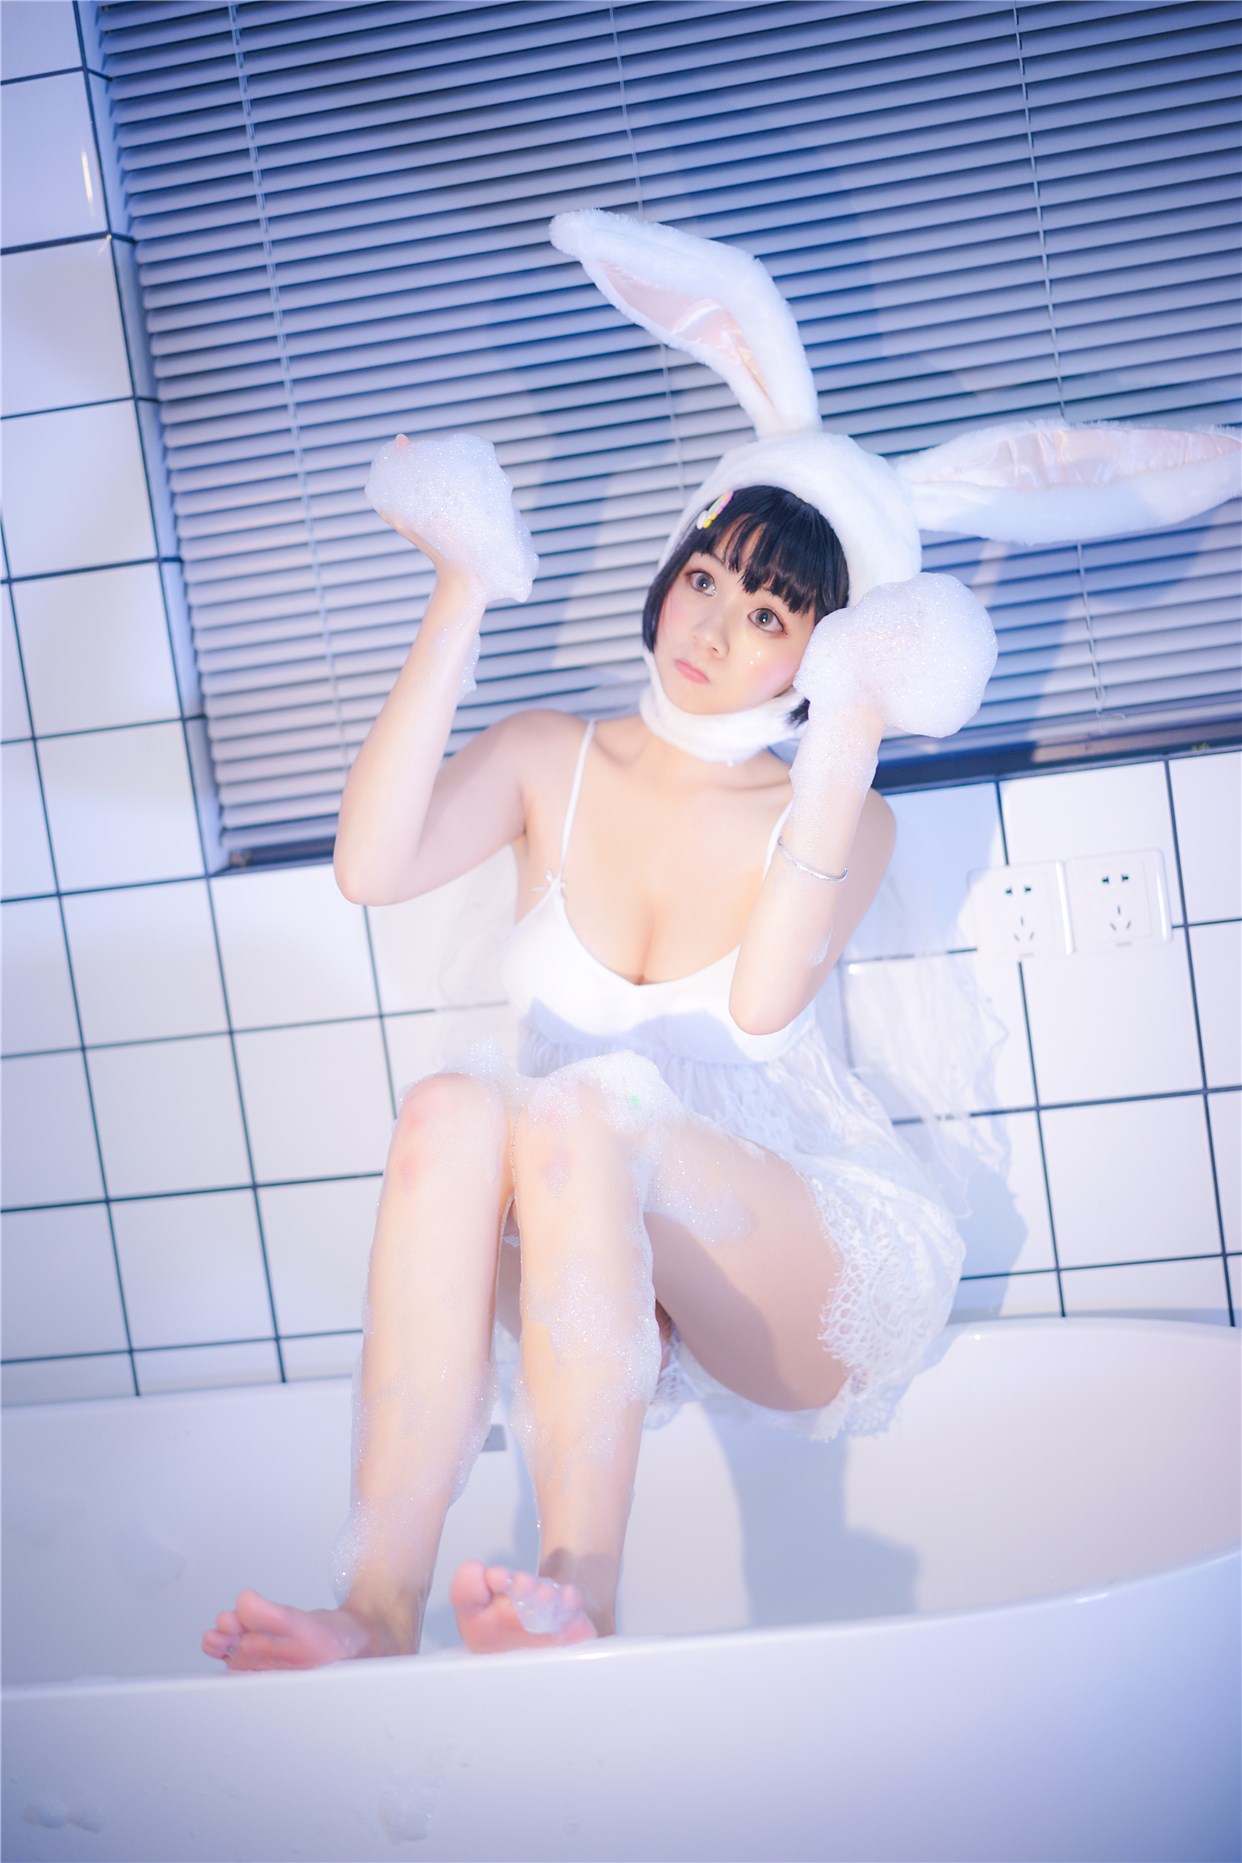 【兔玩映画】浴缸里的兔子 兔玩映画 第25张